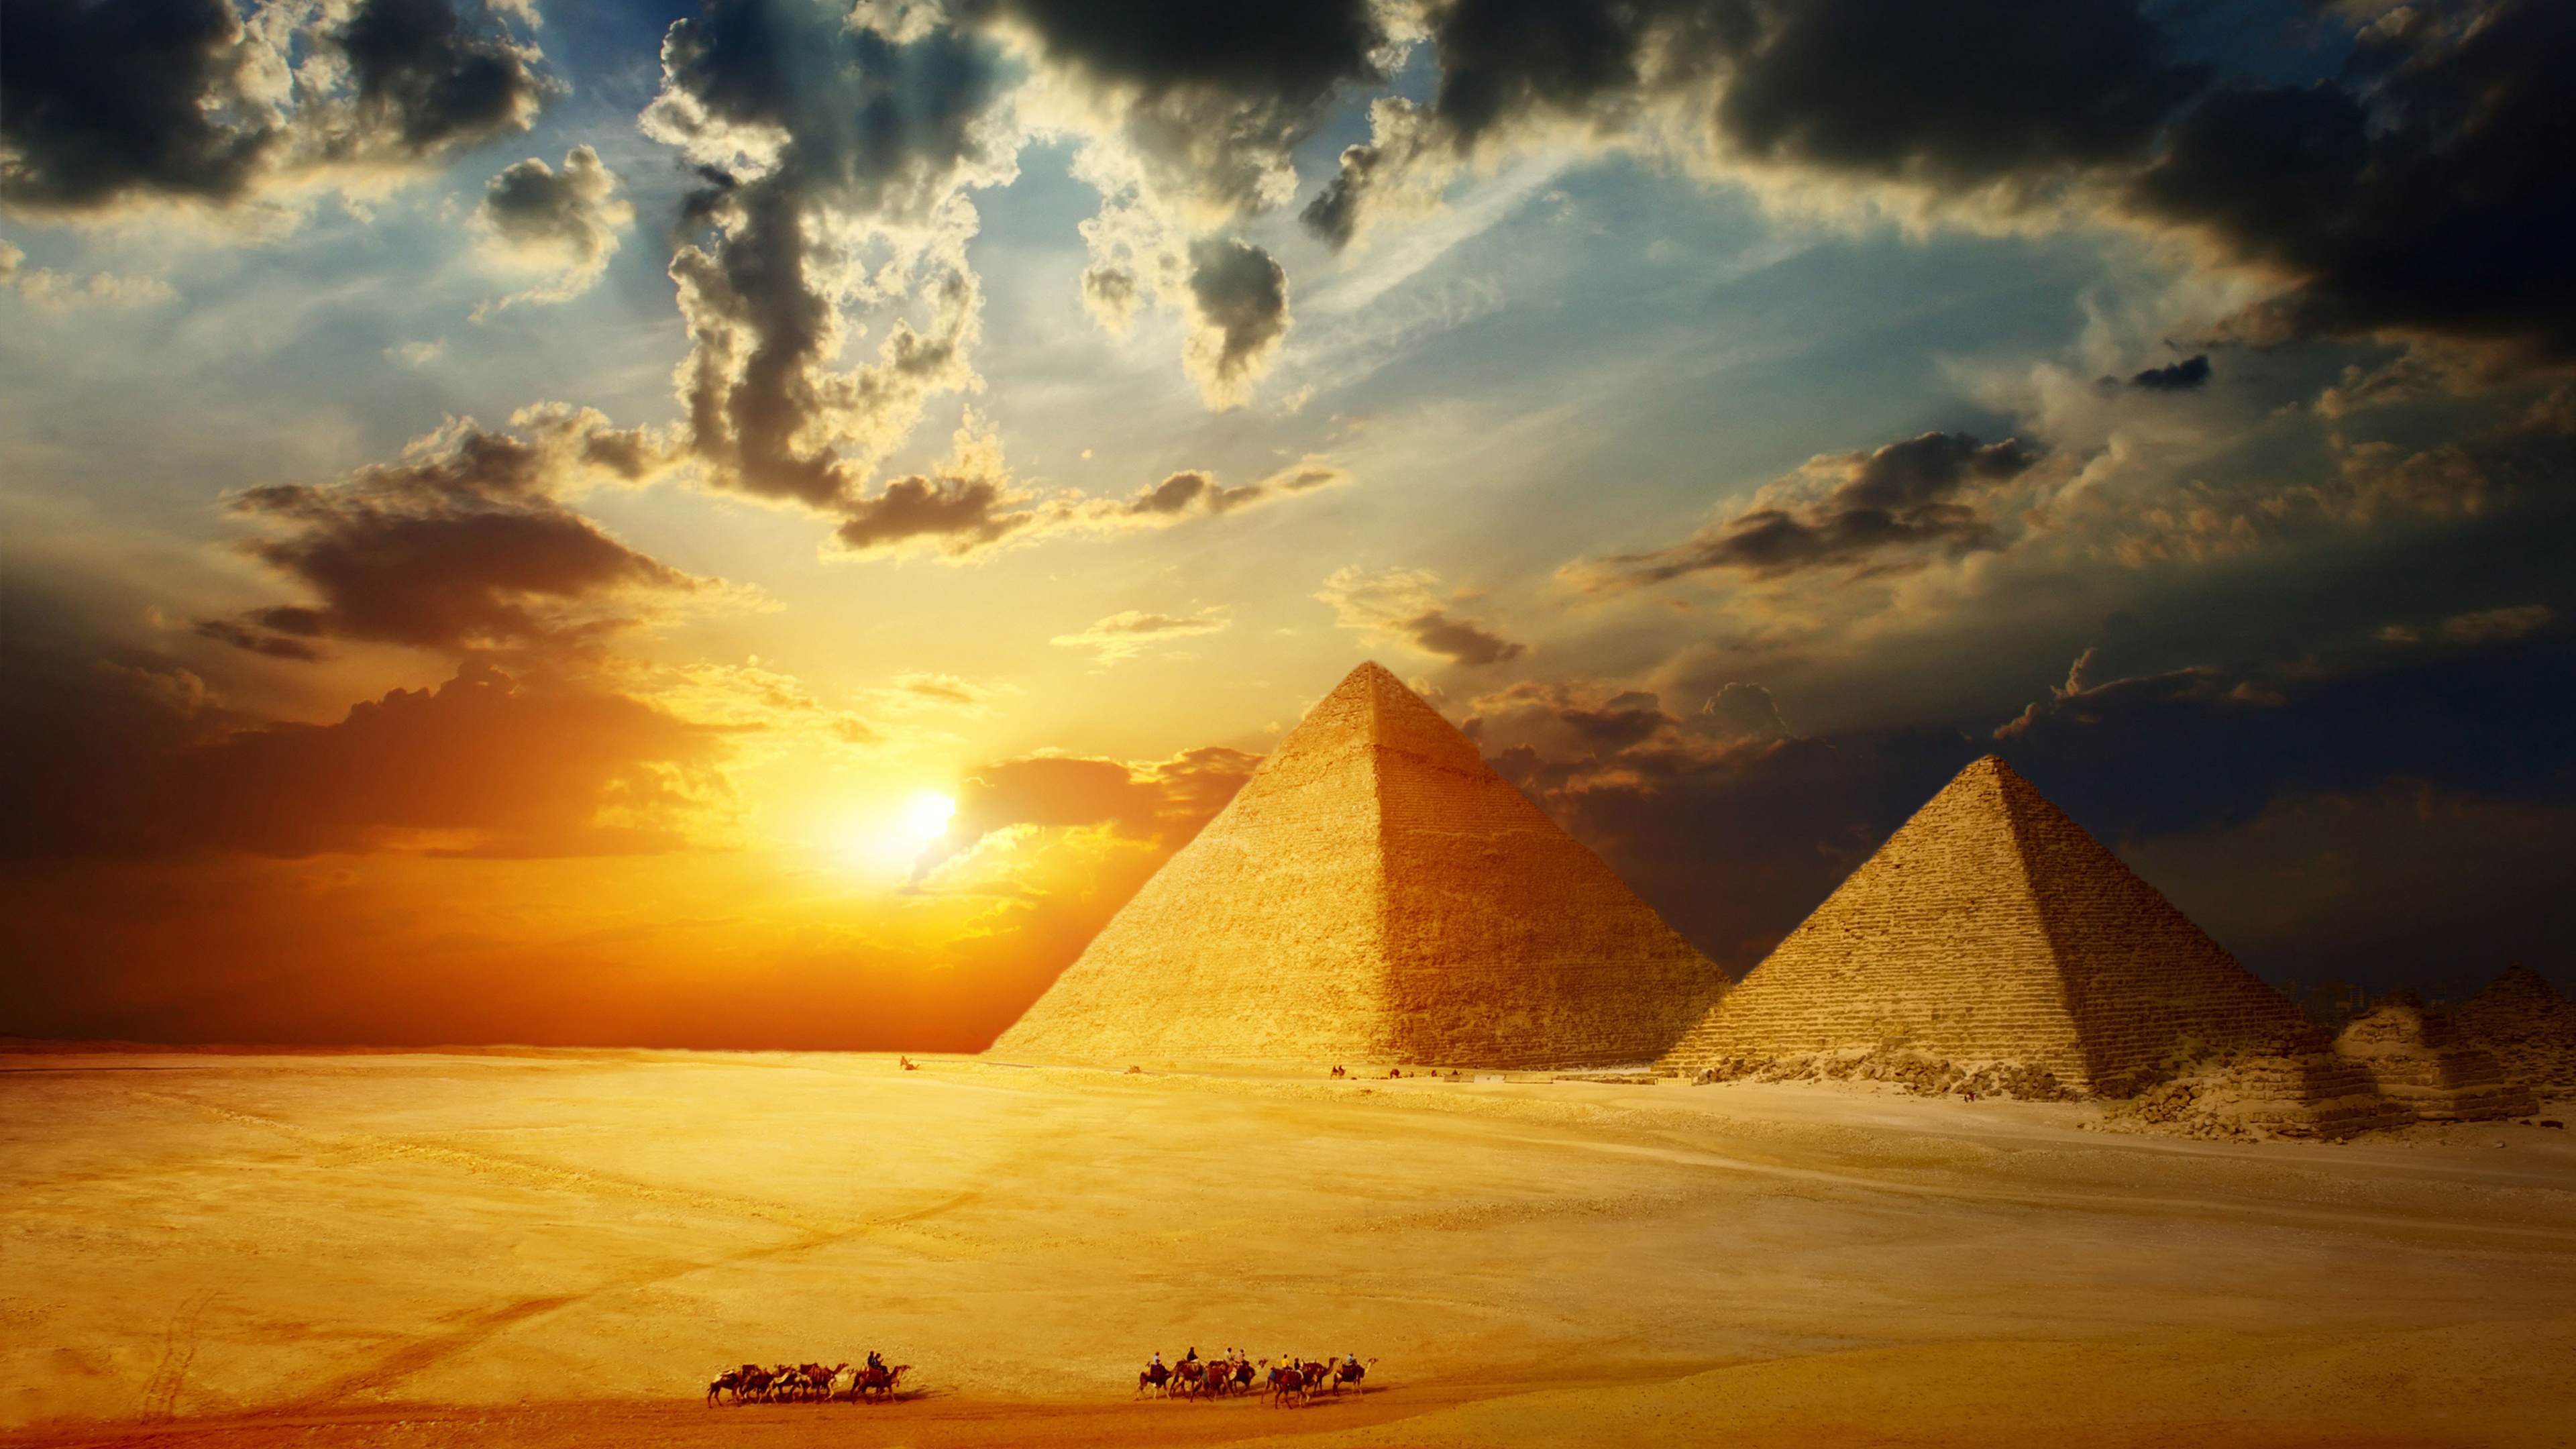 Braune Pyramide Auf Weißem Sand Bei Sonnenuntergang. Wallpaper in 3840x2160 Resolution